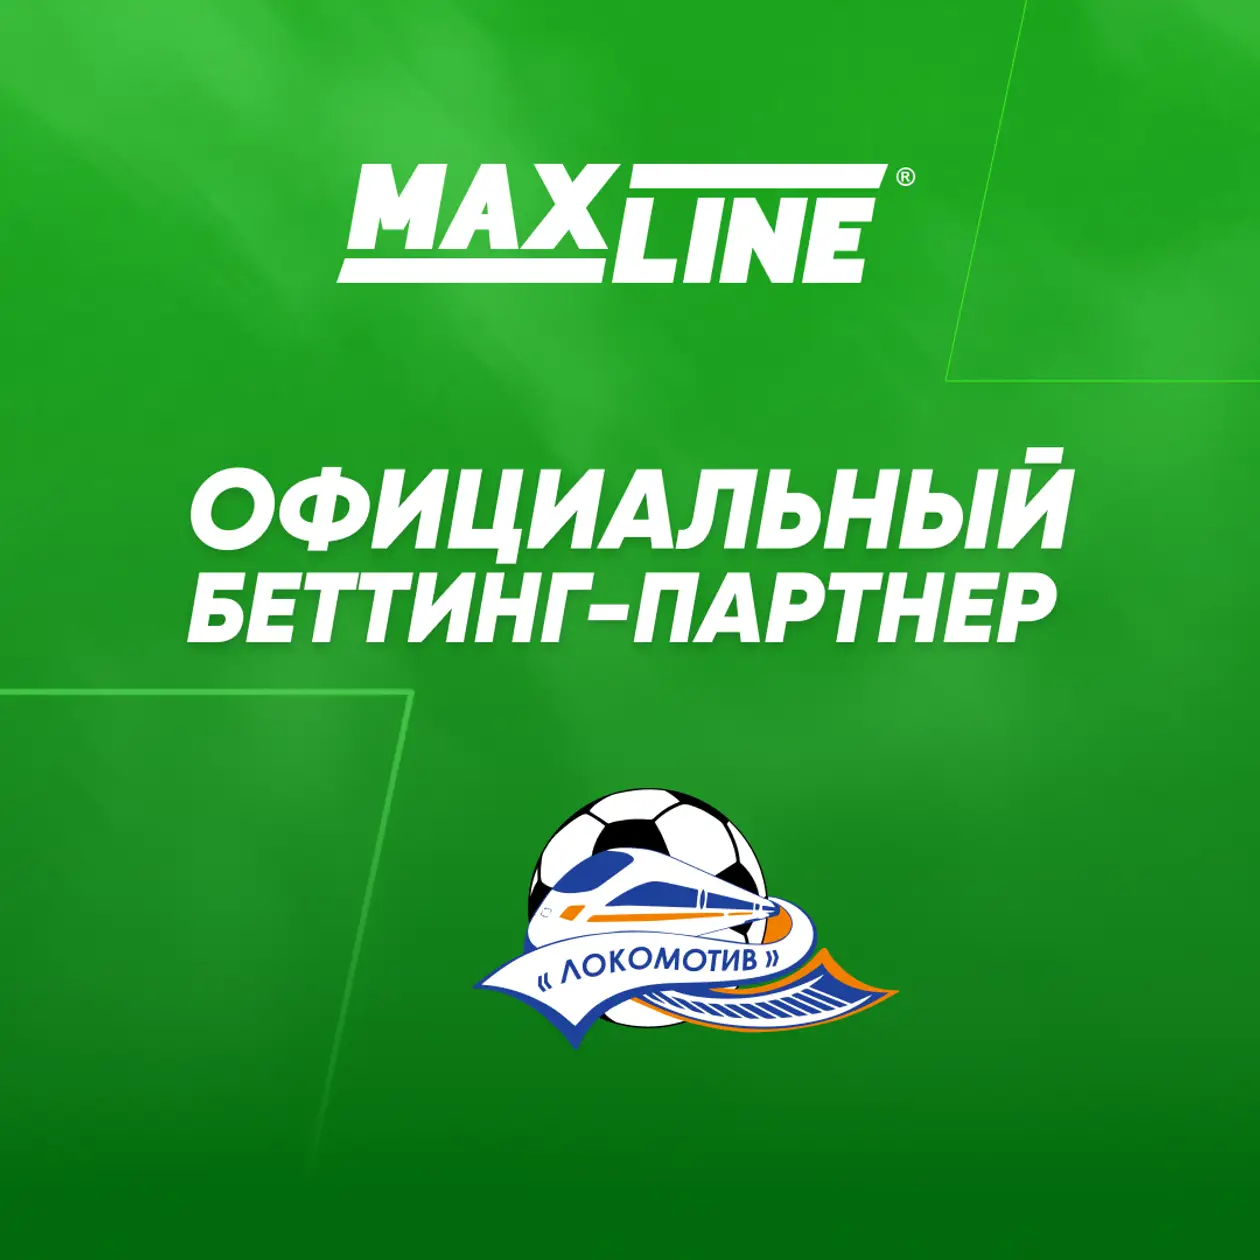 Maxline - официальный беттинг-партнер ФК «Локомотив»